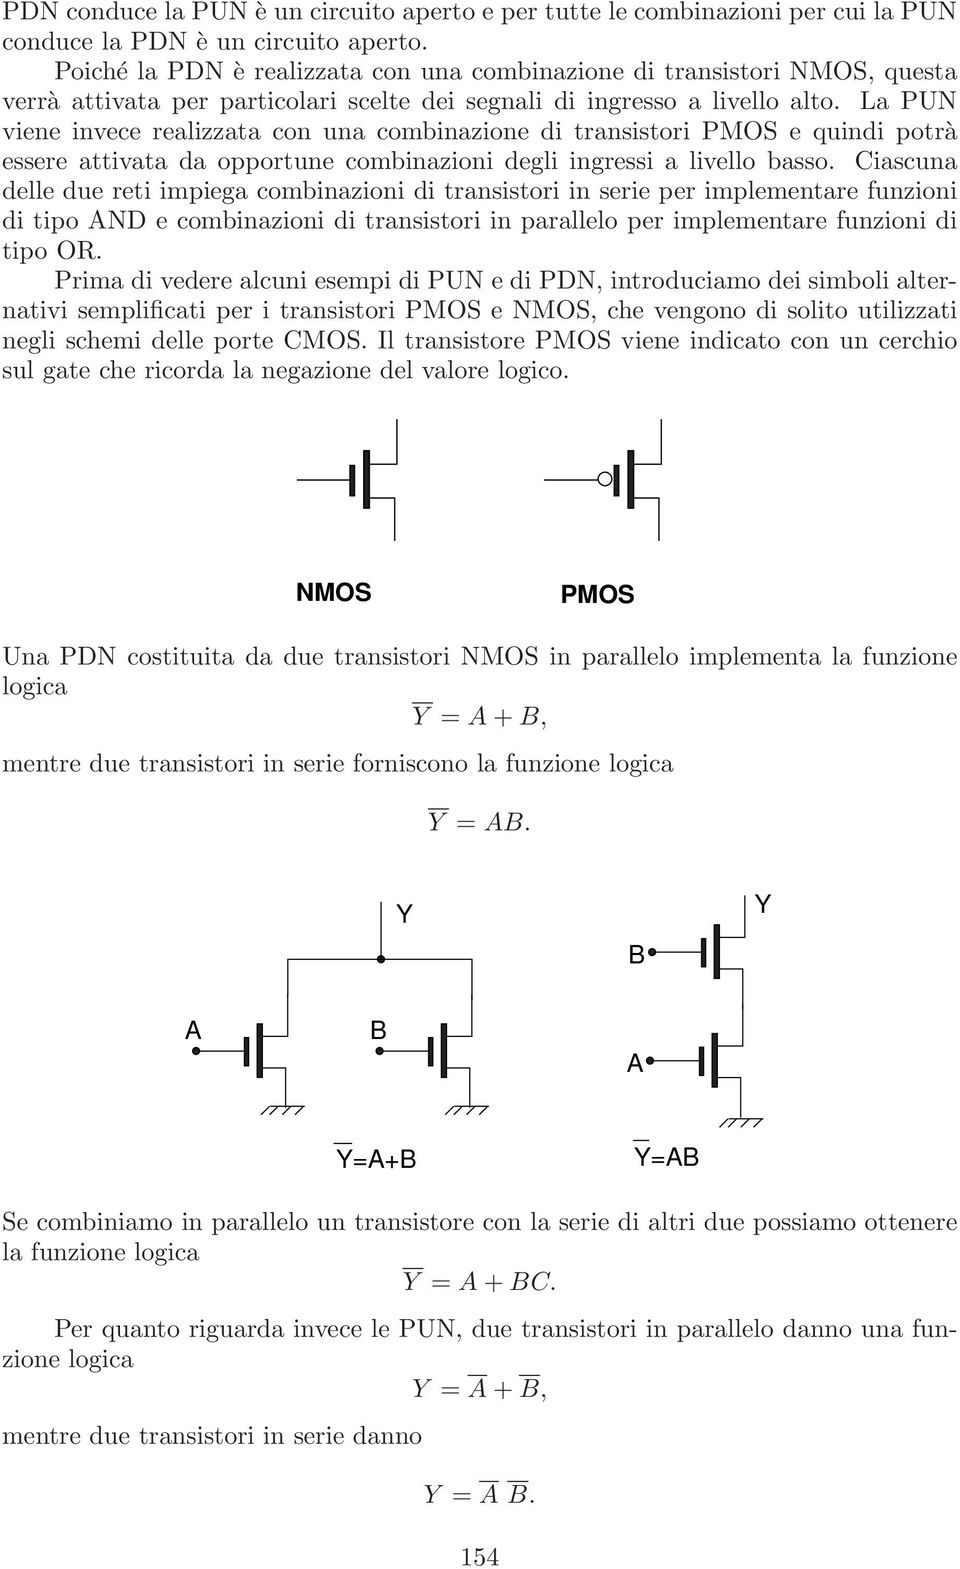 La PUN viene invece realizzata con una combinazione di transistori PMOS e quindi potrà essere attivata da opportune combinazioni degli ingressi a livello basso.